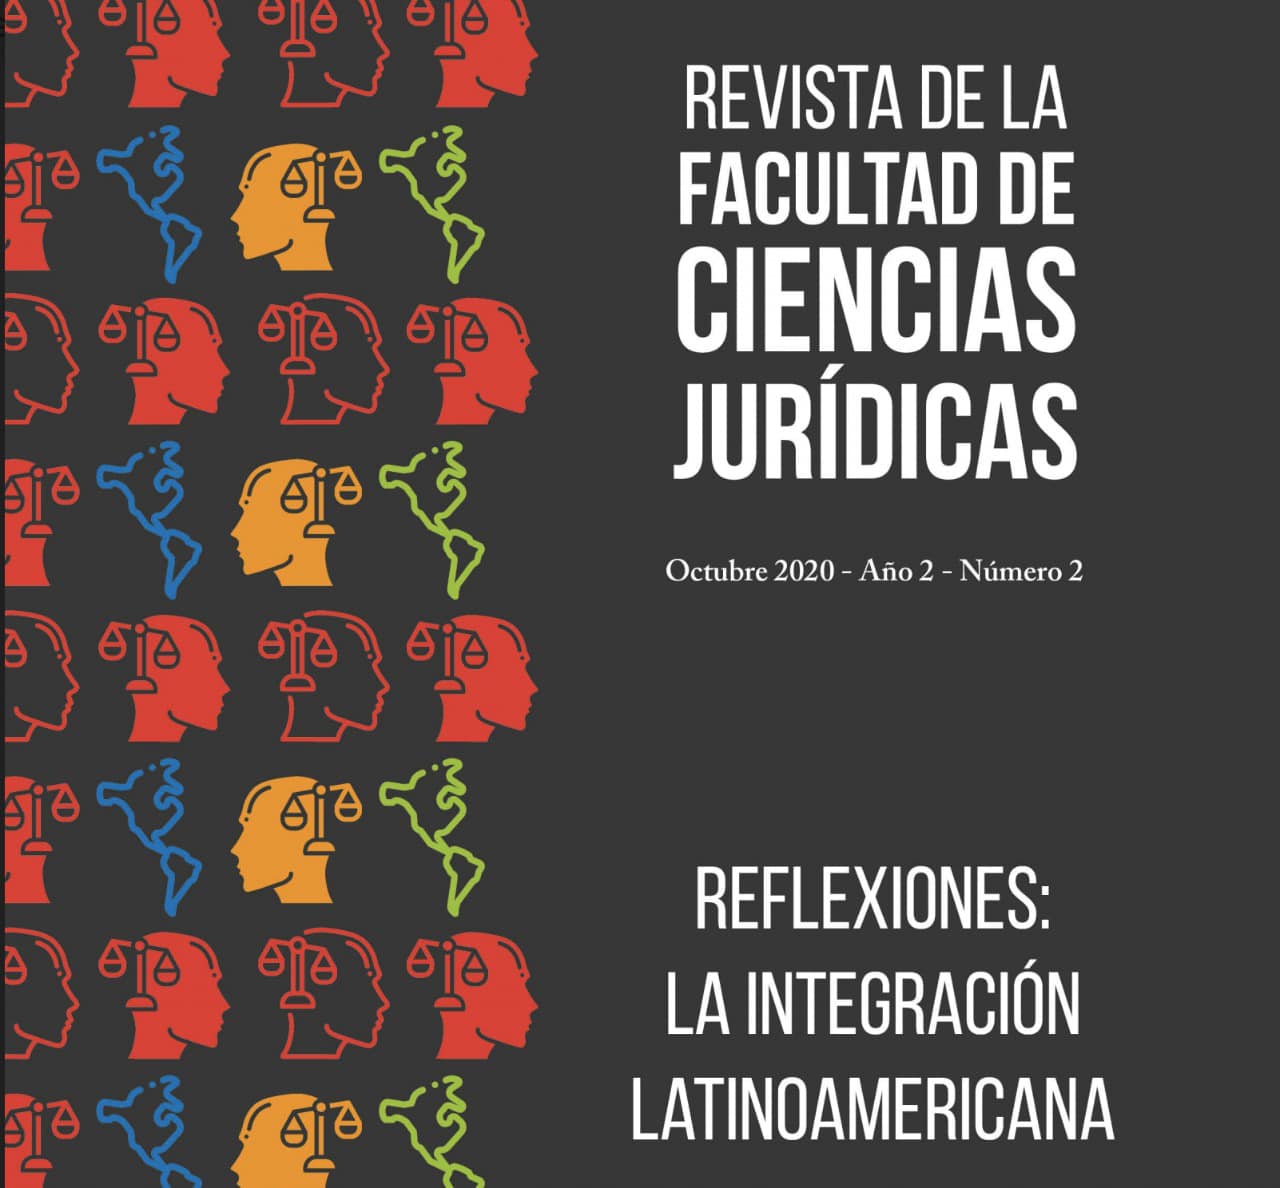 Ciencias Jurídicas analiza la integración latinoamericana